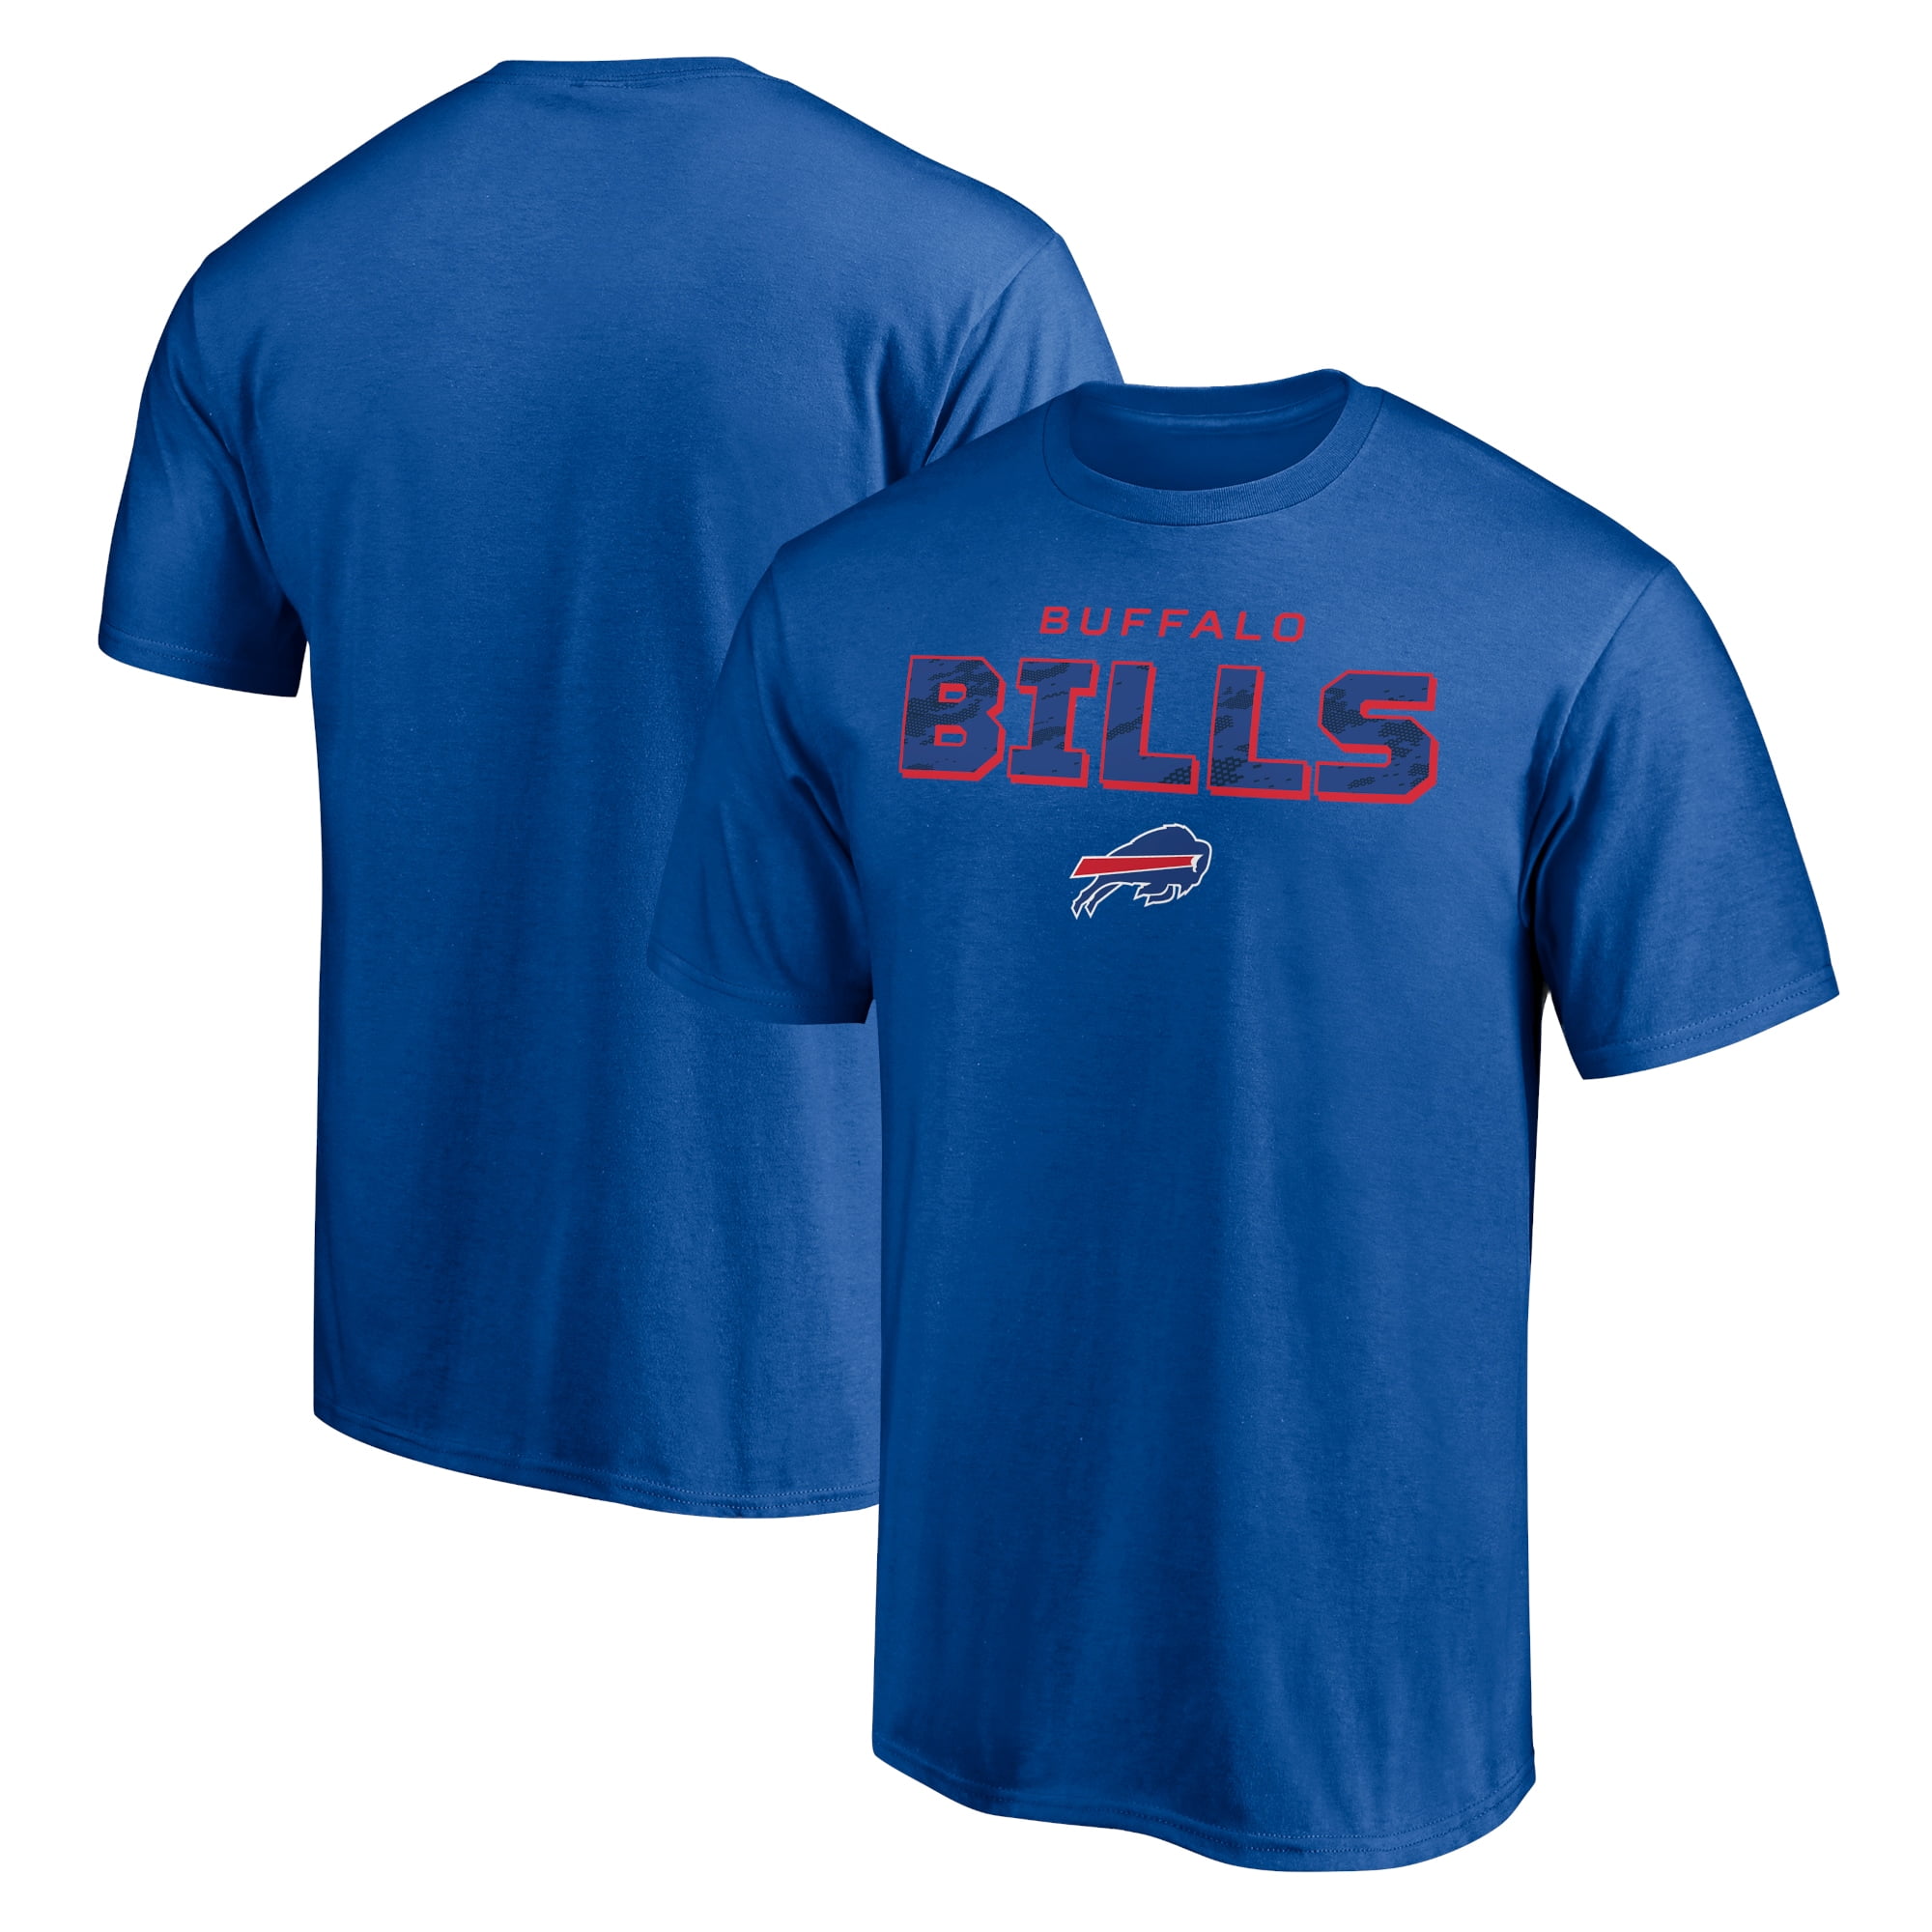 Buffalo Bills 2020 Team Skyline Shirt; Buffalo Bills 2020; Buffalo Bills Shirt; Bills Mafia Shirts; Bills Shirt Shirts; Buffalo Shirt